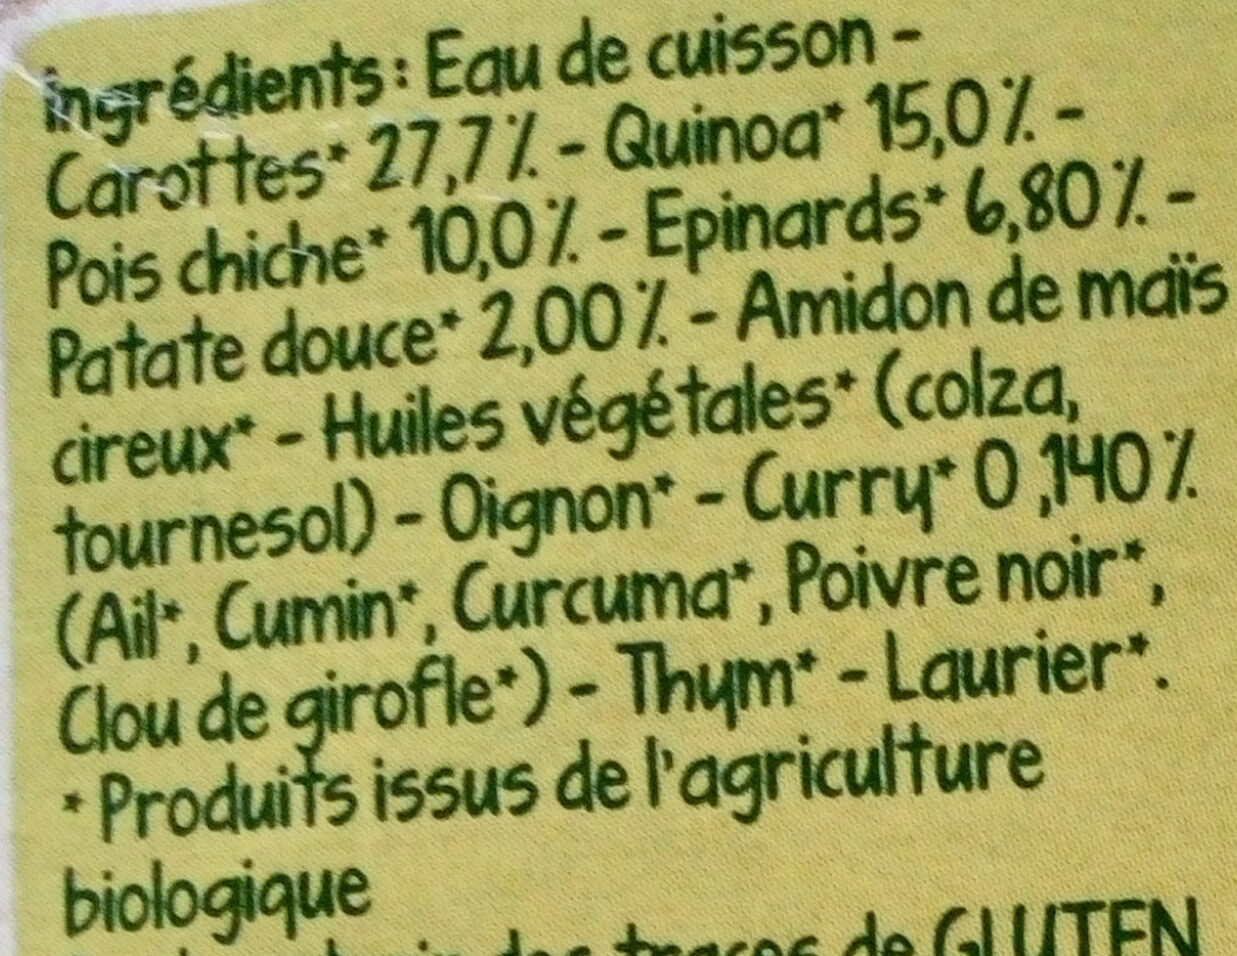 Mes légumineuses - Carottes, Pois chiches, Epinards et Quinoa au curry - Ingrédients